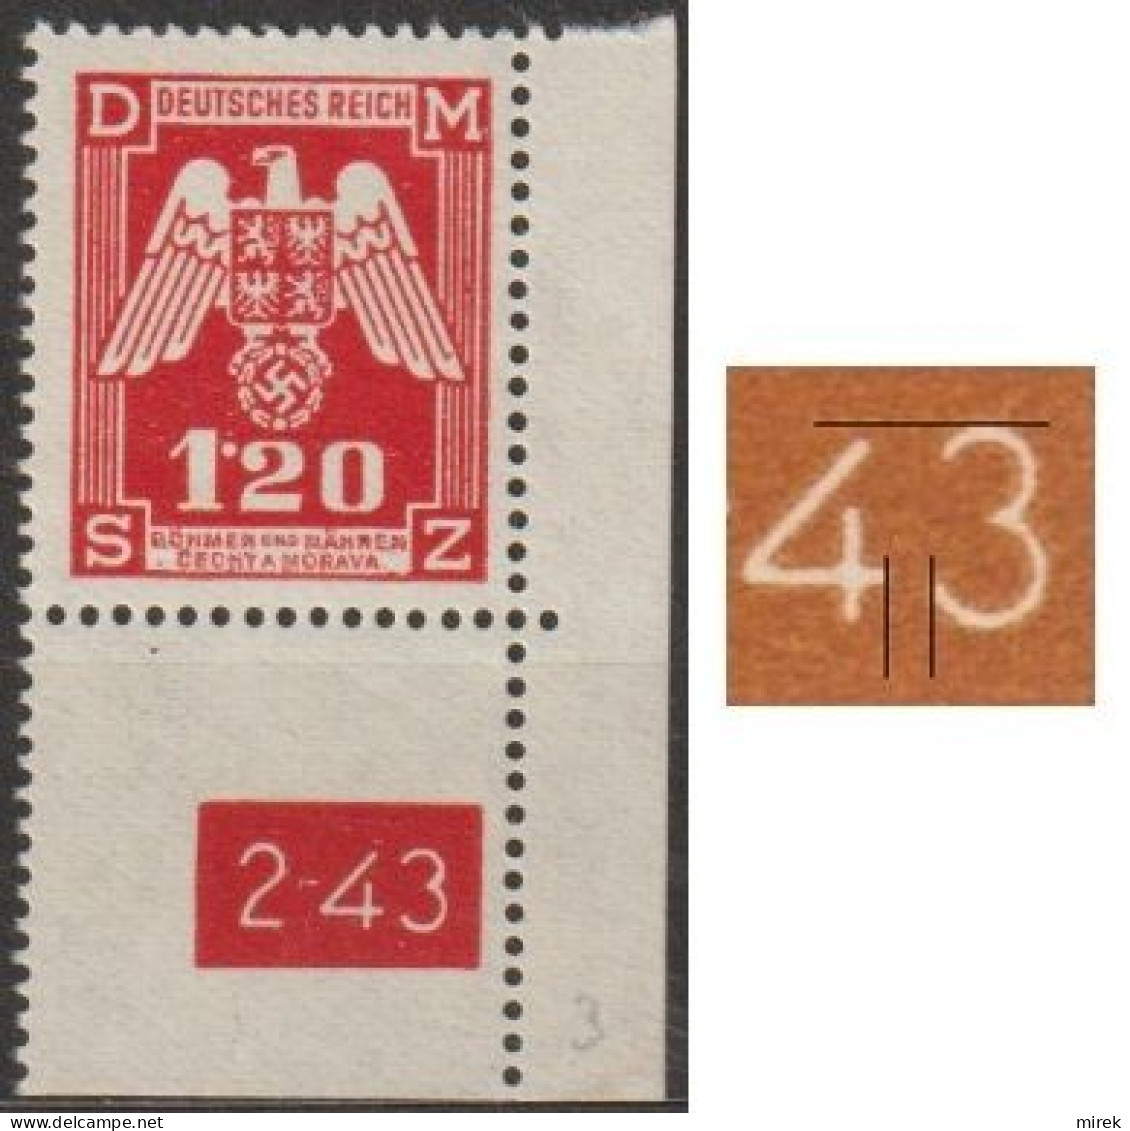 026a/ Pof. SL 19, Corner Stamp, Plate Number 2-43, Type 2, Var. 3 - Ungebraucht